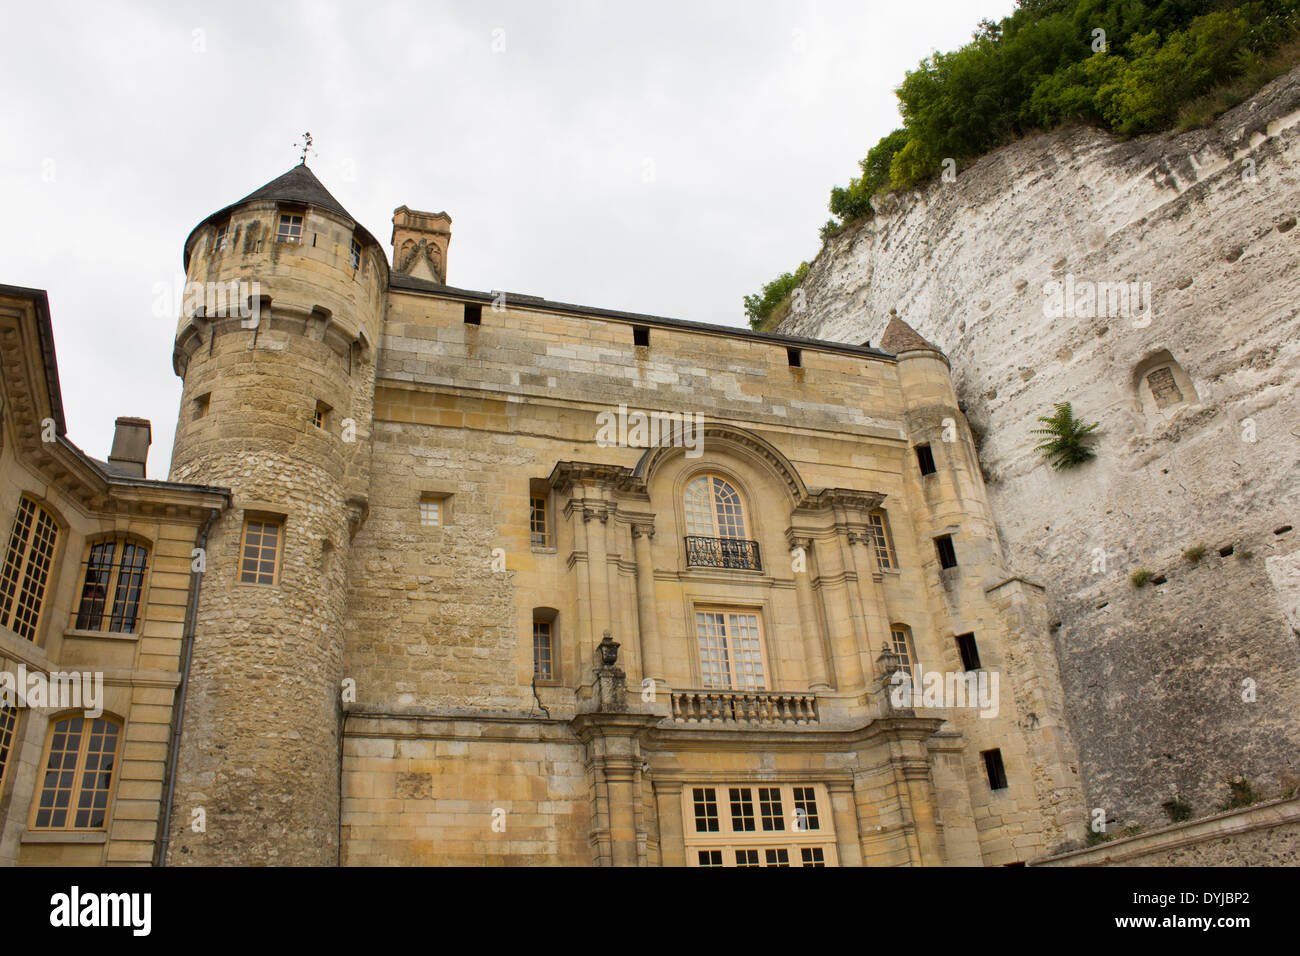 Chateau de la roche-guyon stables.  The castle is dug out of the limestone cliffs. Stock Photo